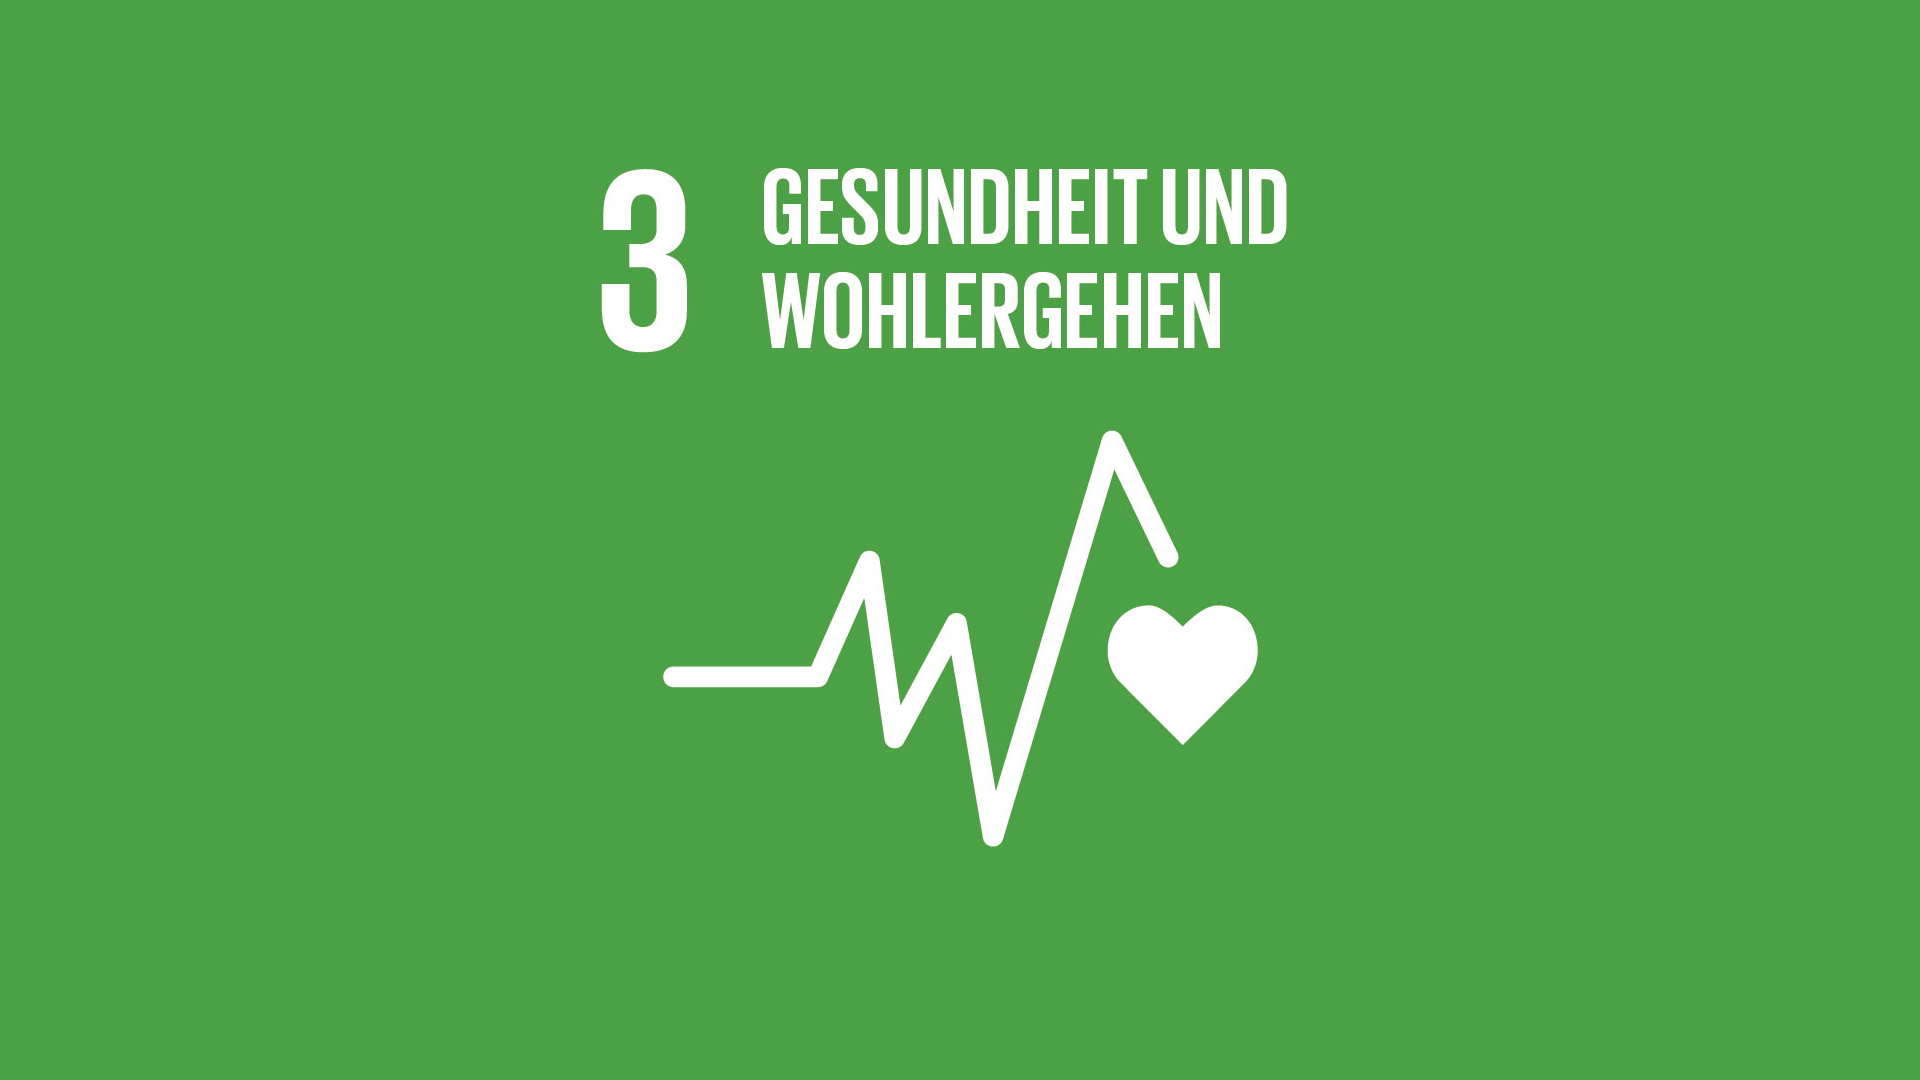 SDG 3: Gesundheit und Wohlergehen